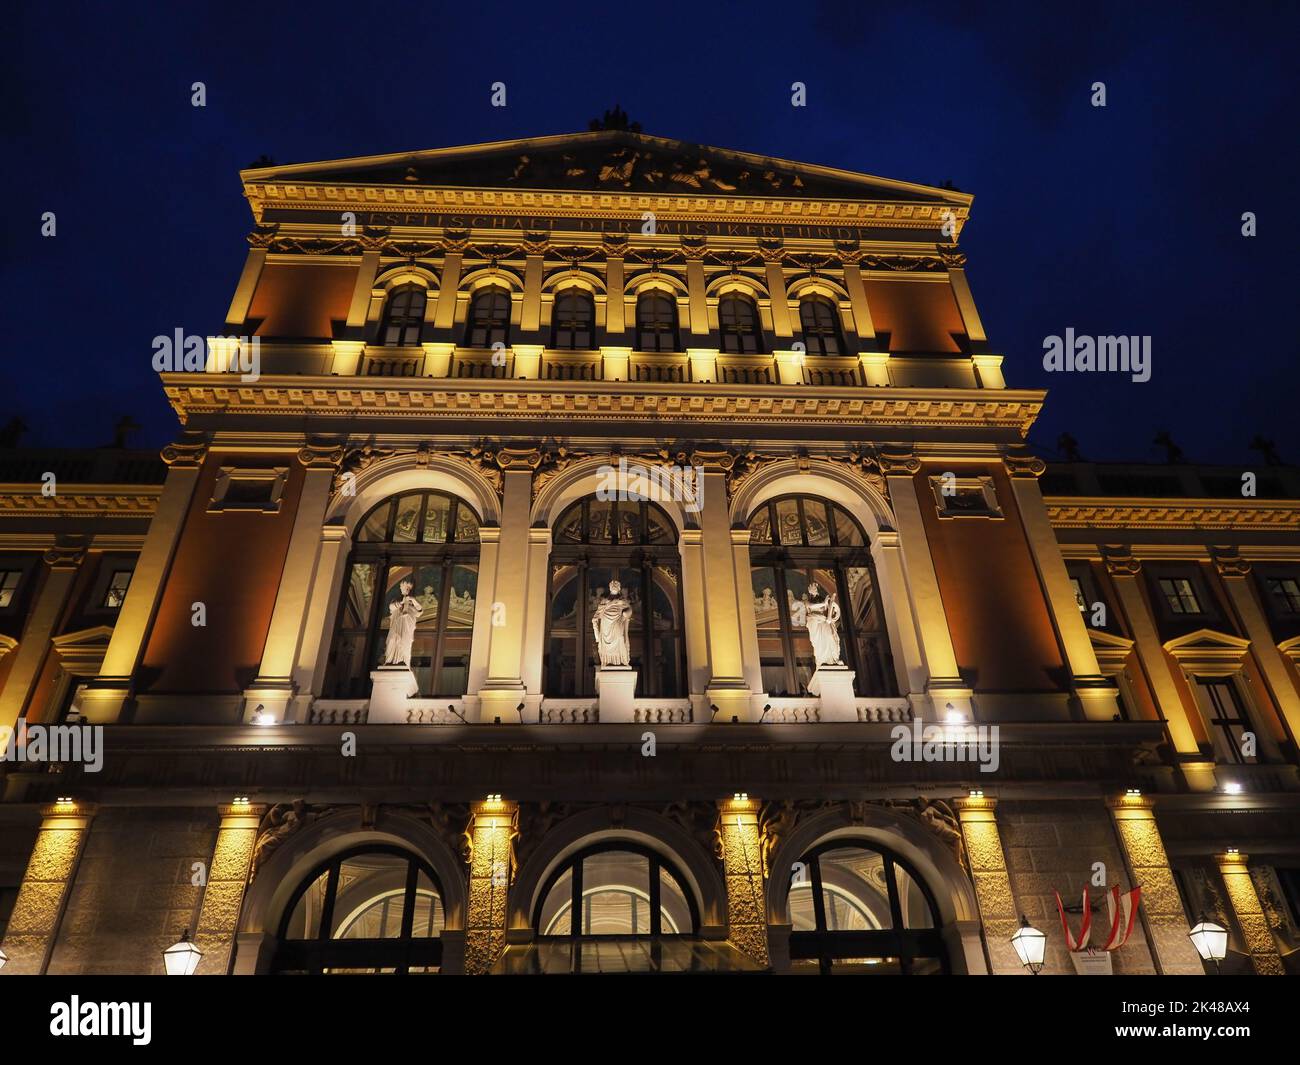 Wiener Musikverein translation Viennese Music Association concert hall in Vienna, Austria Stock Photo